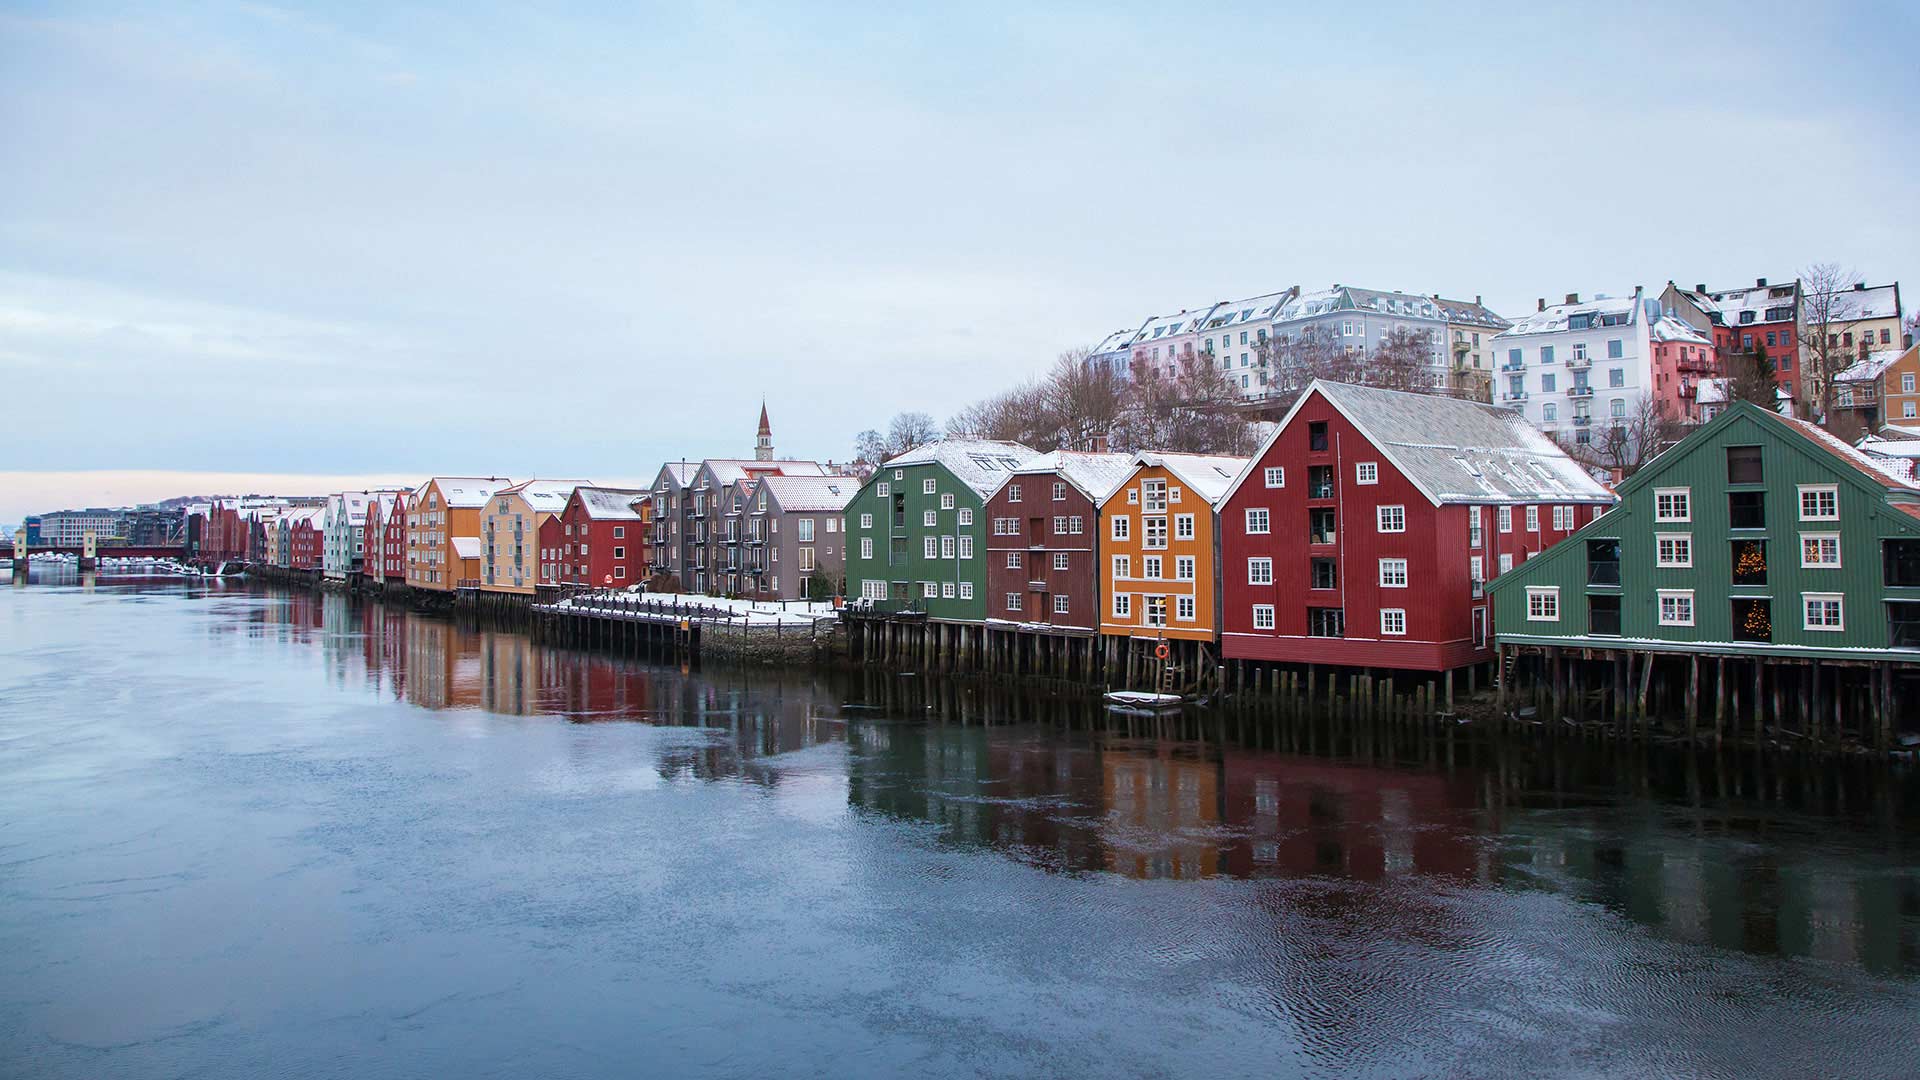 Bakklandet in Trondheim